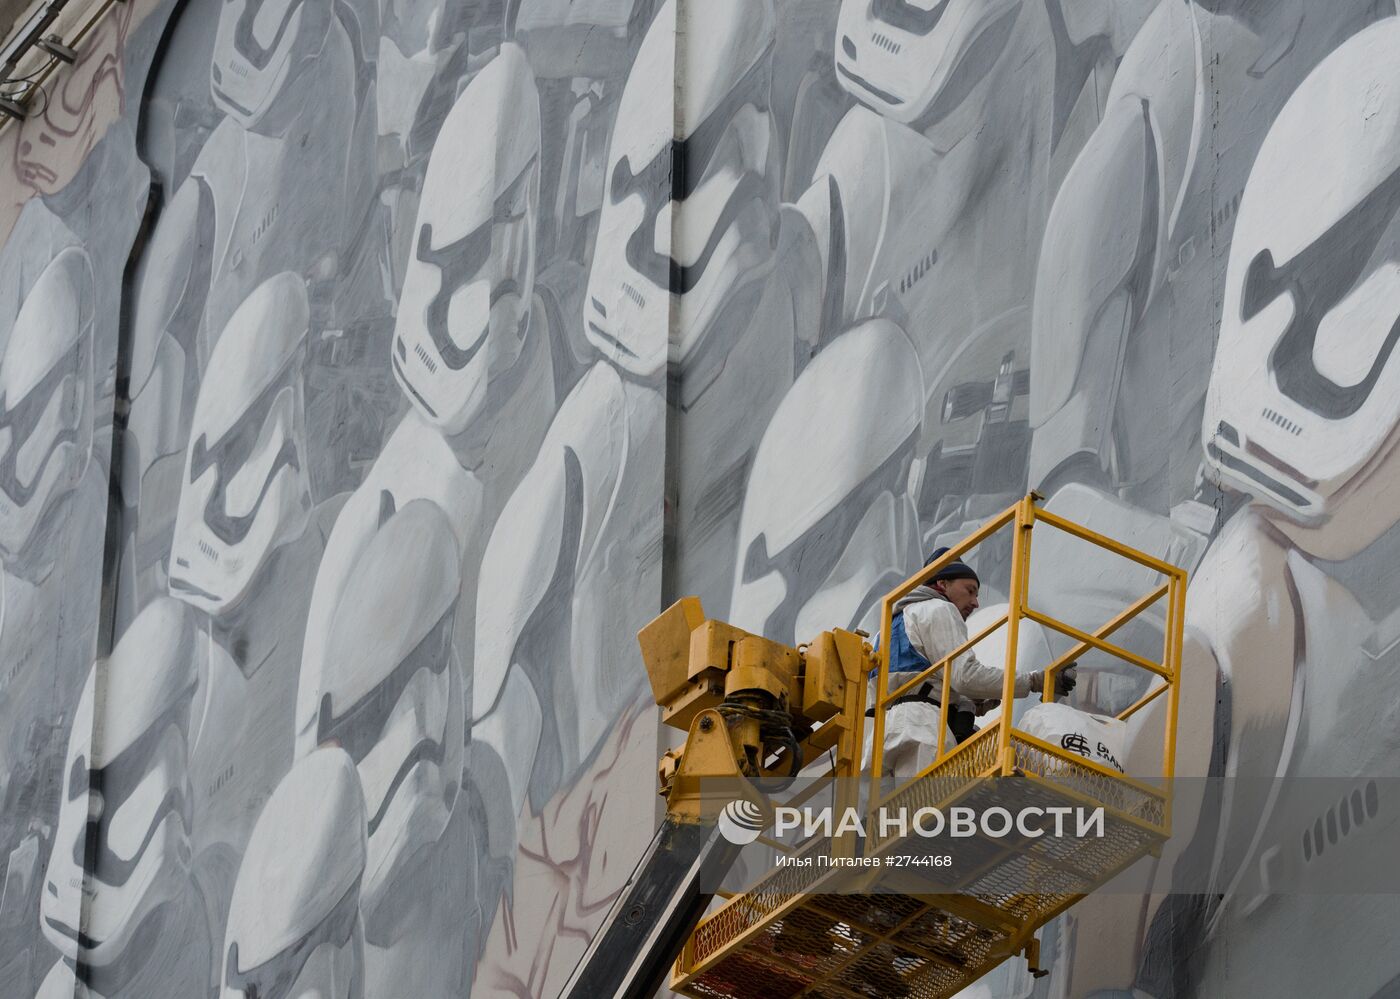 Граффити по мотивам фильма "Звездные войны" в Москве